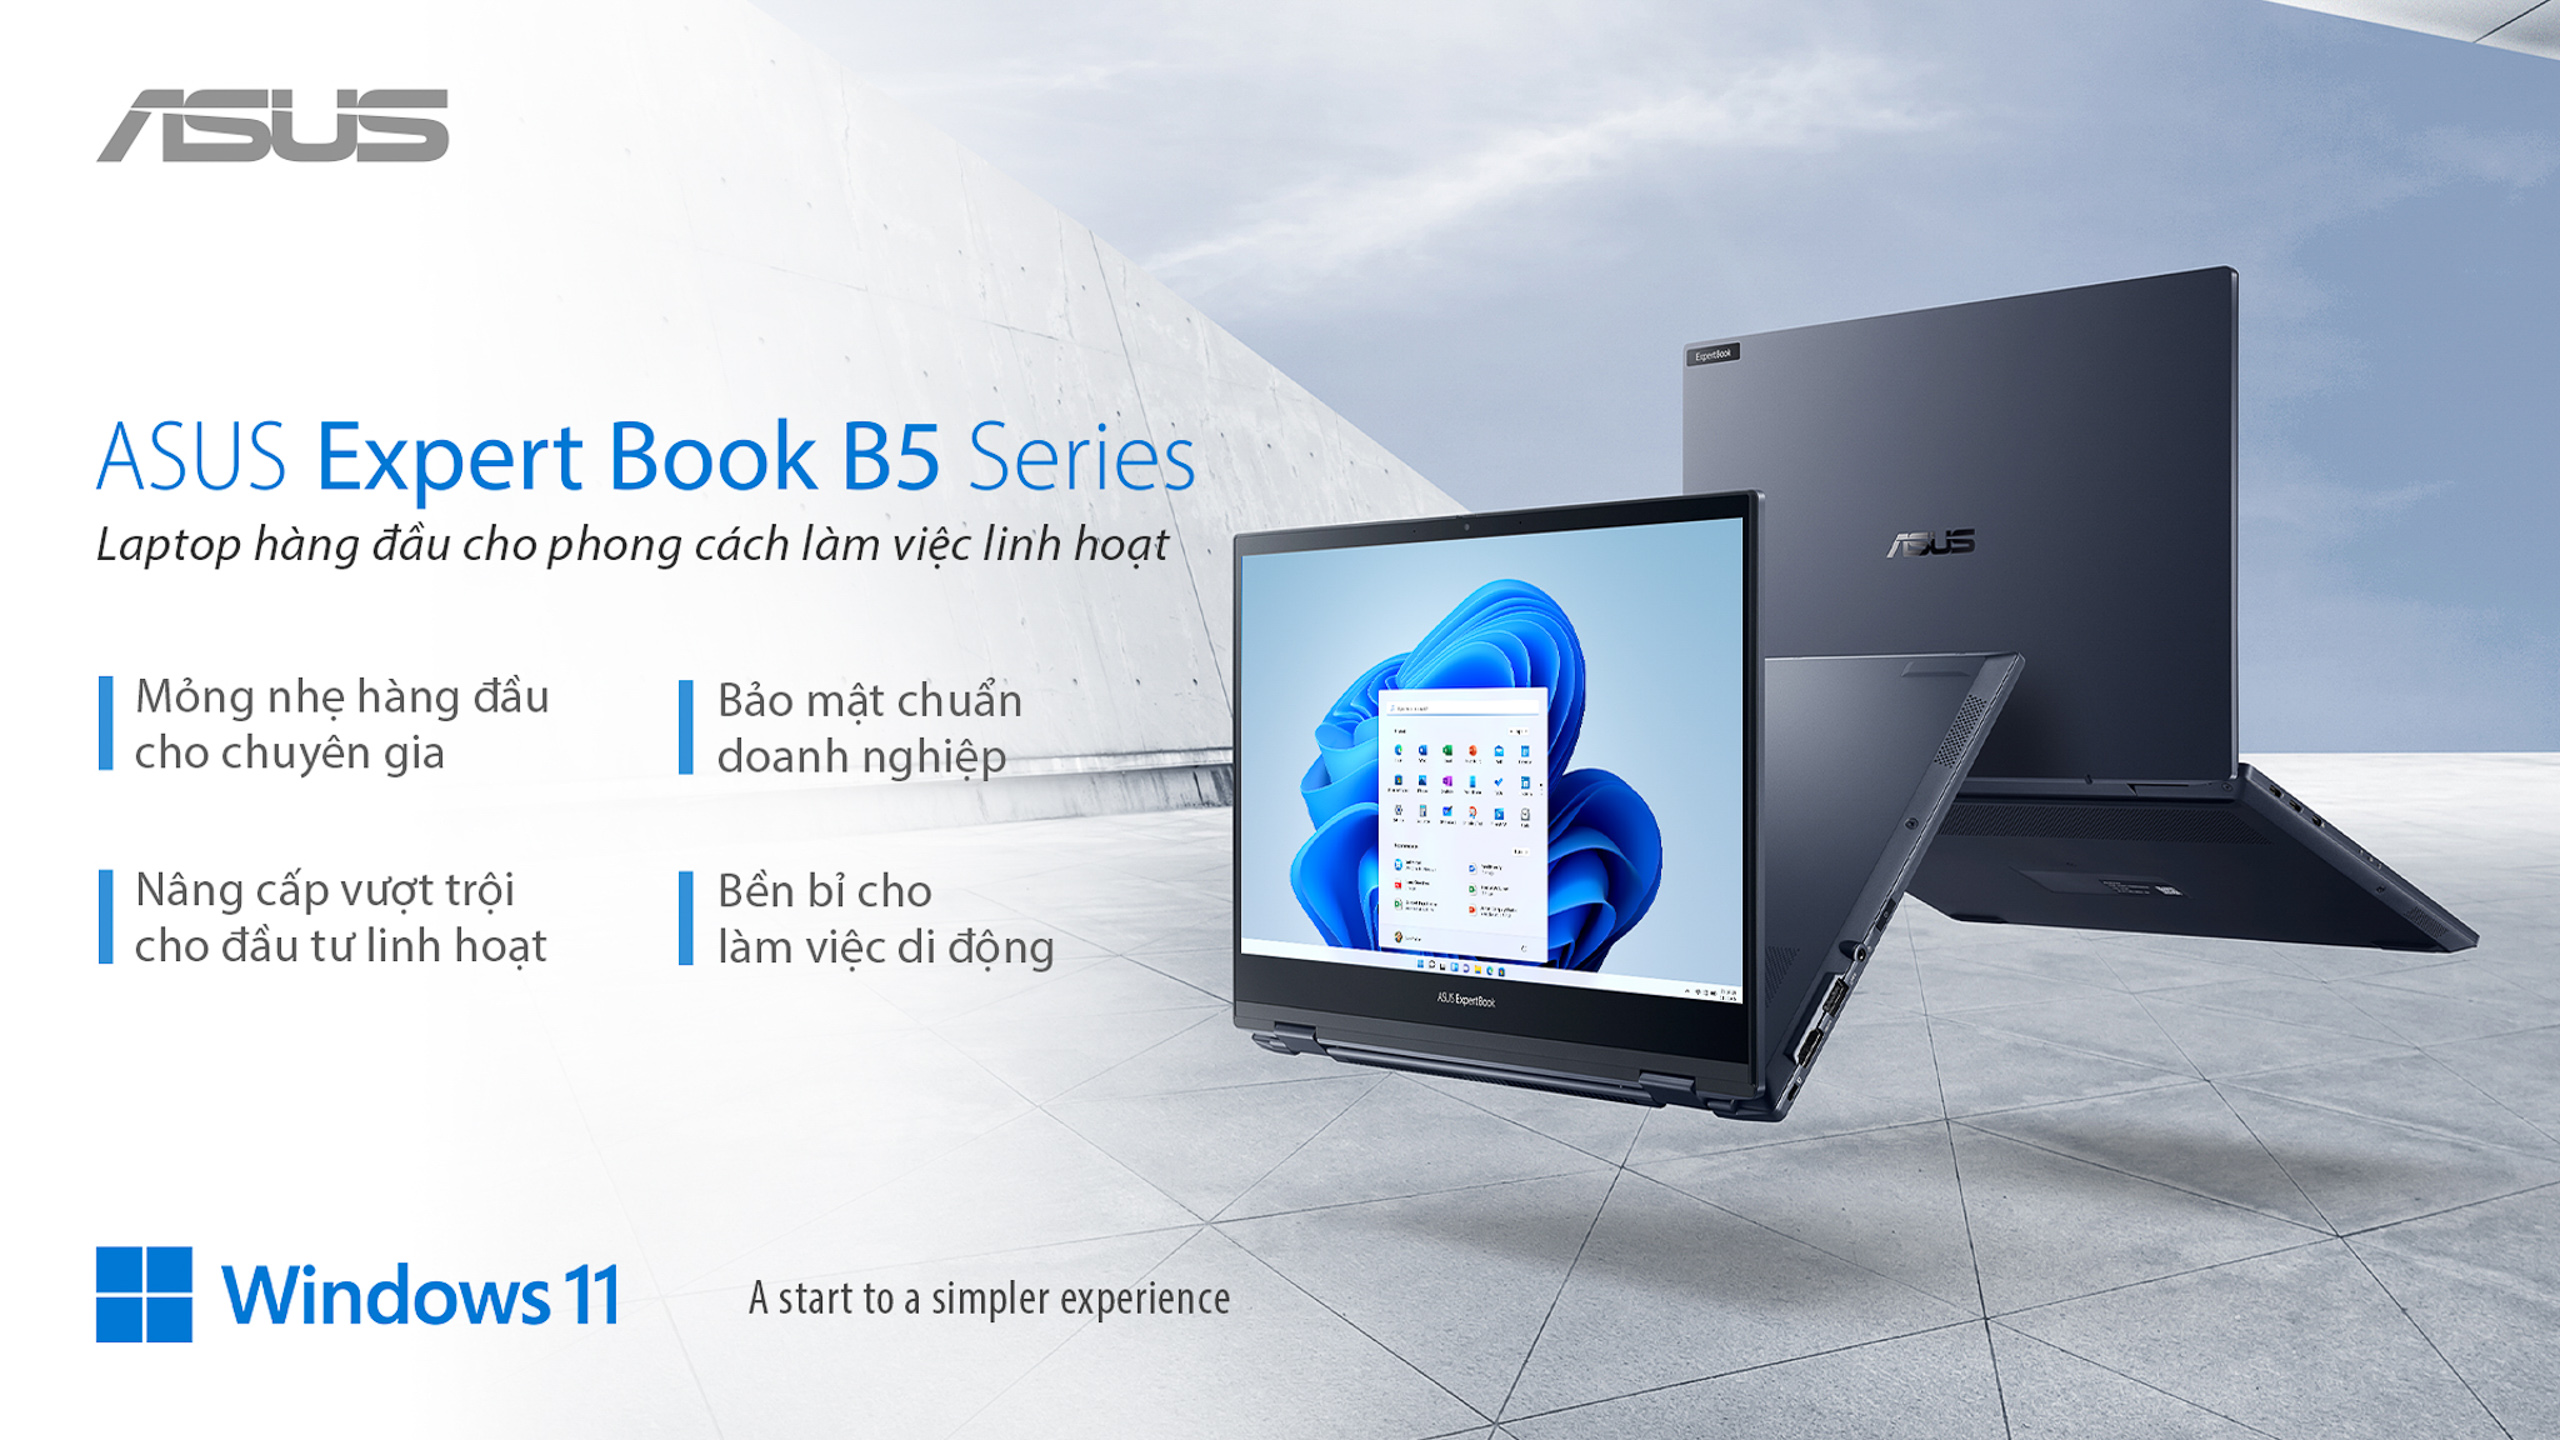 ASUS Việt Nam giới thiệu ExpertBook B5 Series: Laptop hàng đầu cho phong cách làm việc linh hoạt